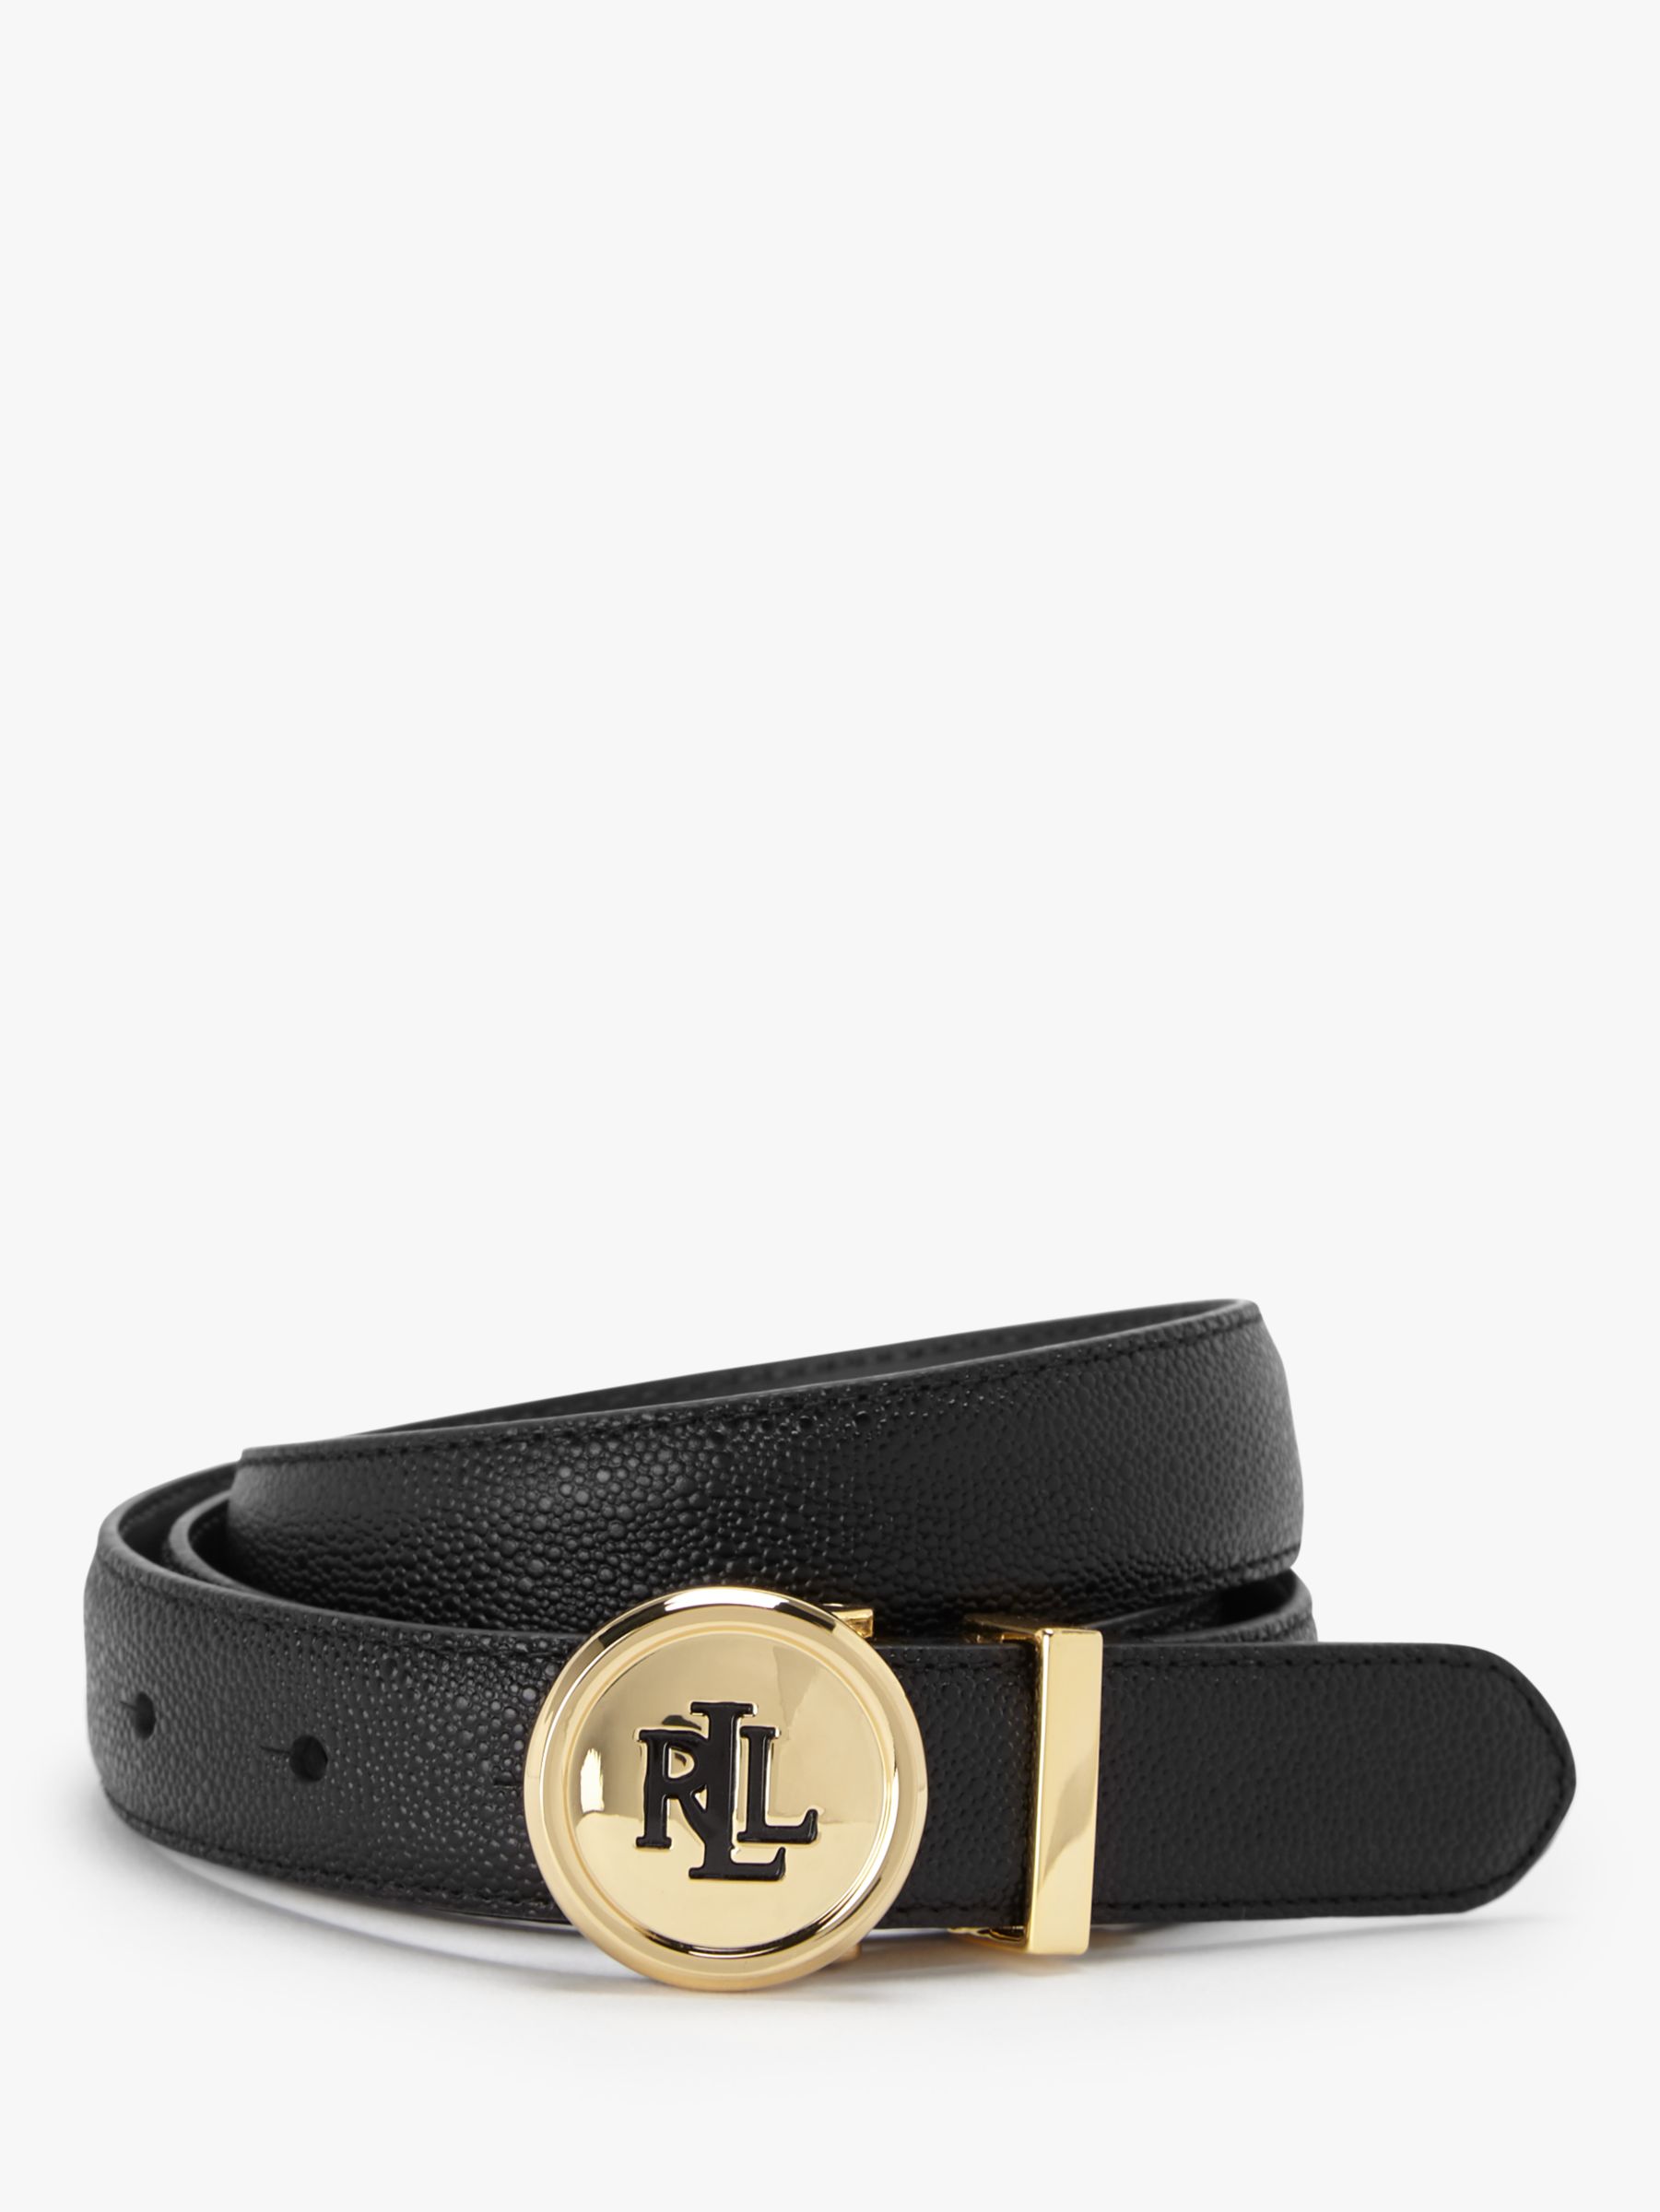 Lauren Ralph Lauren Logo Dress Leather Belt, Black/Dark Brown